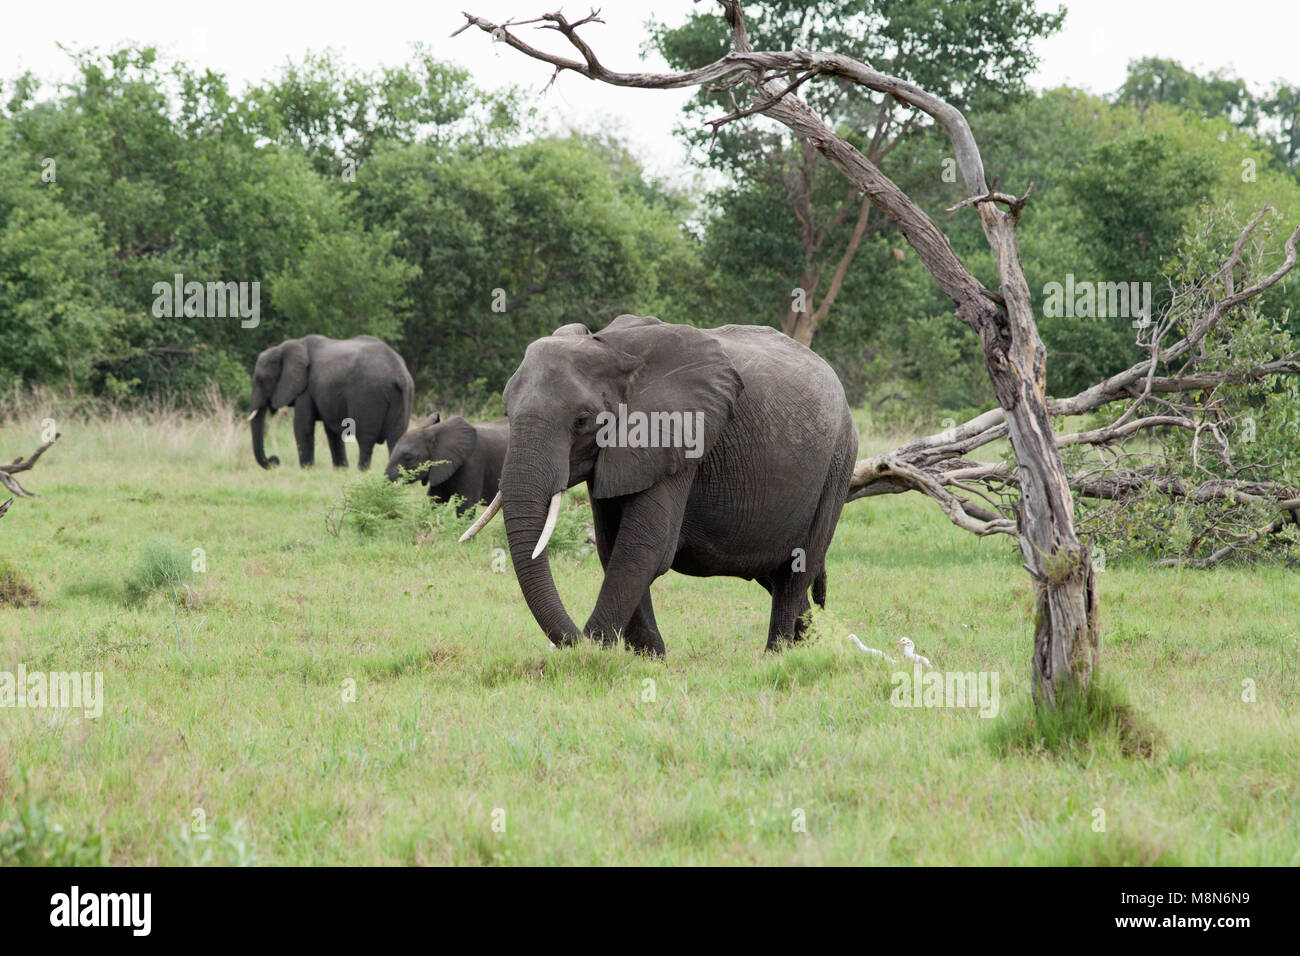 Afrikanische Elefanten (Loxodonta africanus). Fütterung. Beweidung, das Sammeln von Gras. Elefanten beschädigten Baum im Vordergrund. Januar. Okavango Delta. Botswana. Afrika. Stockfoto